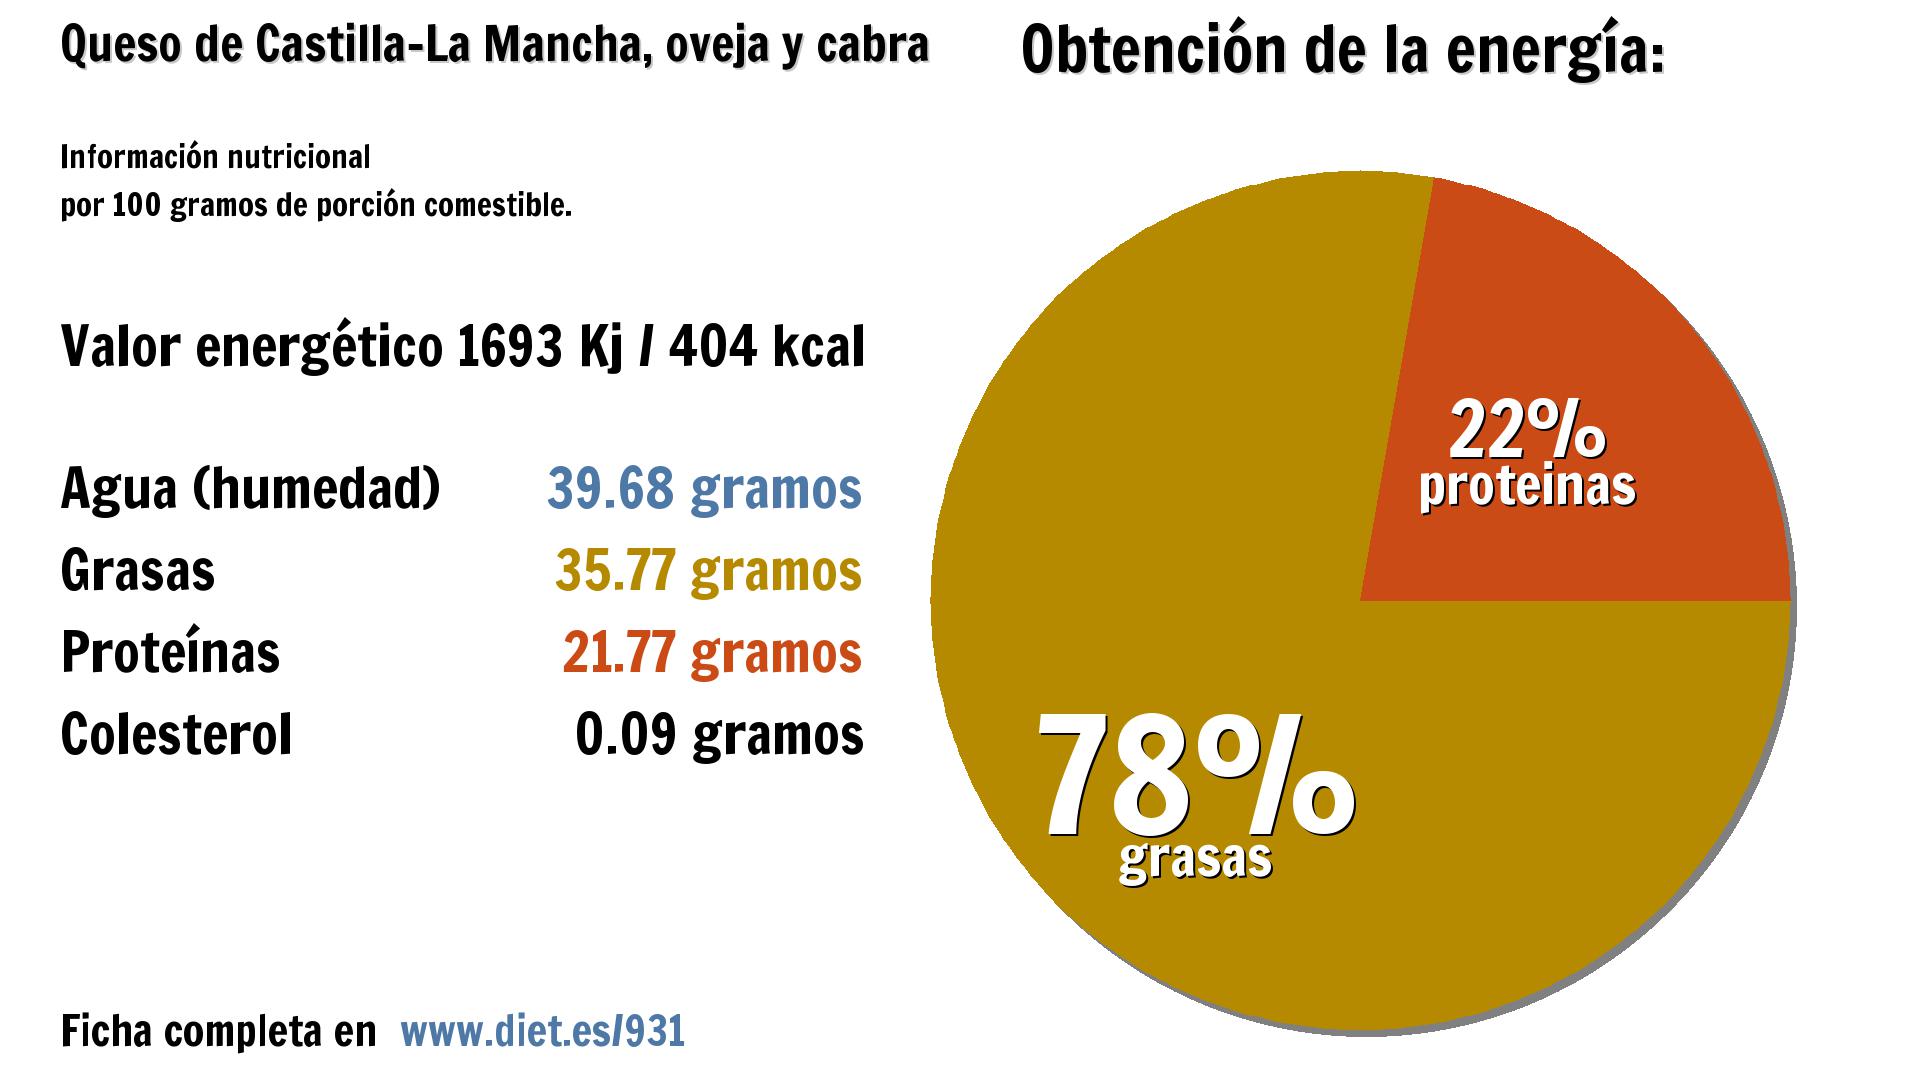 Queso de Castilla-La Mancha, oveja y cabra: energía 1693 Kj, agua 40 g., grasas 36 g. y proteínas 22 g.